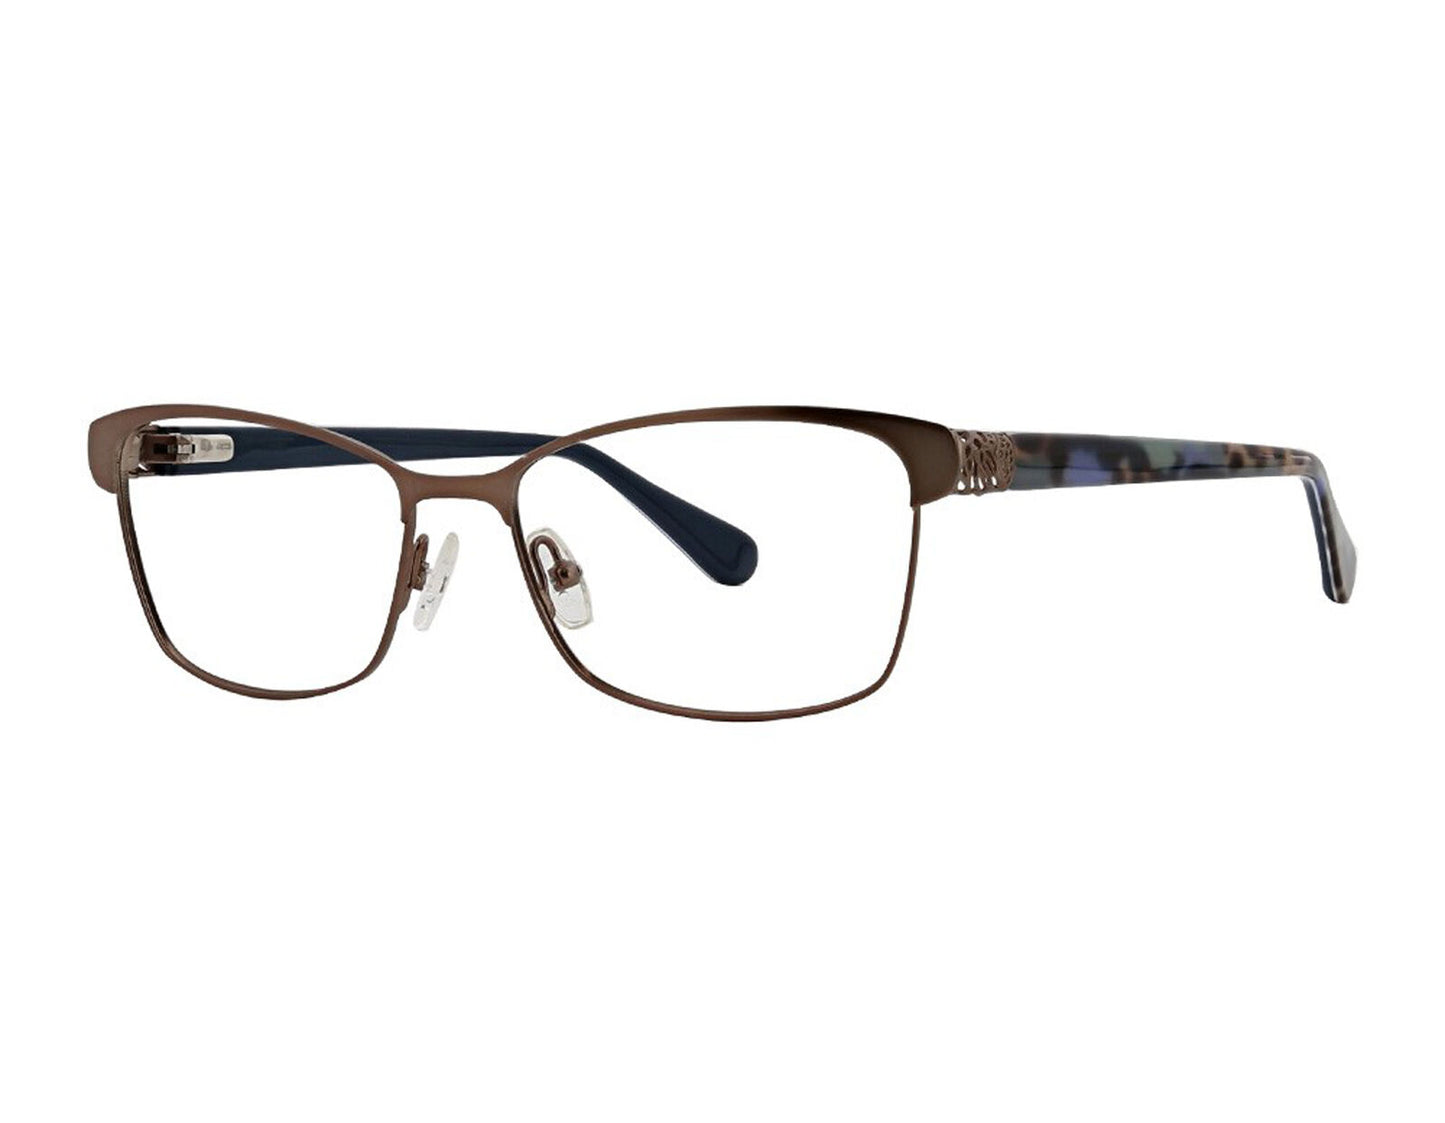 Xoxo XOXO-MARBELLA-COCOA 53mm New Eyeglasses